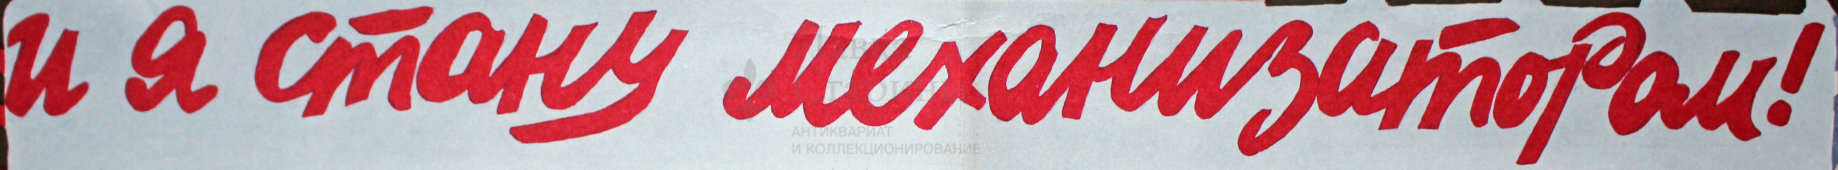 Советский агитационный плакат «И я стану механизатором!», художник В. Вотрин, 1978 г.